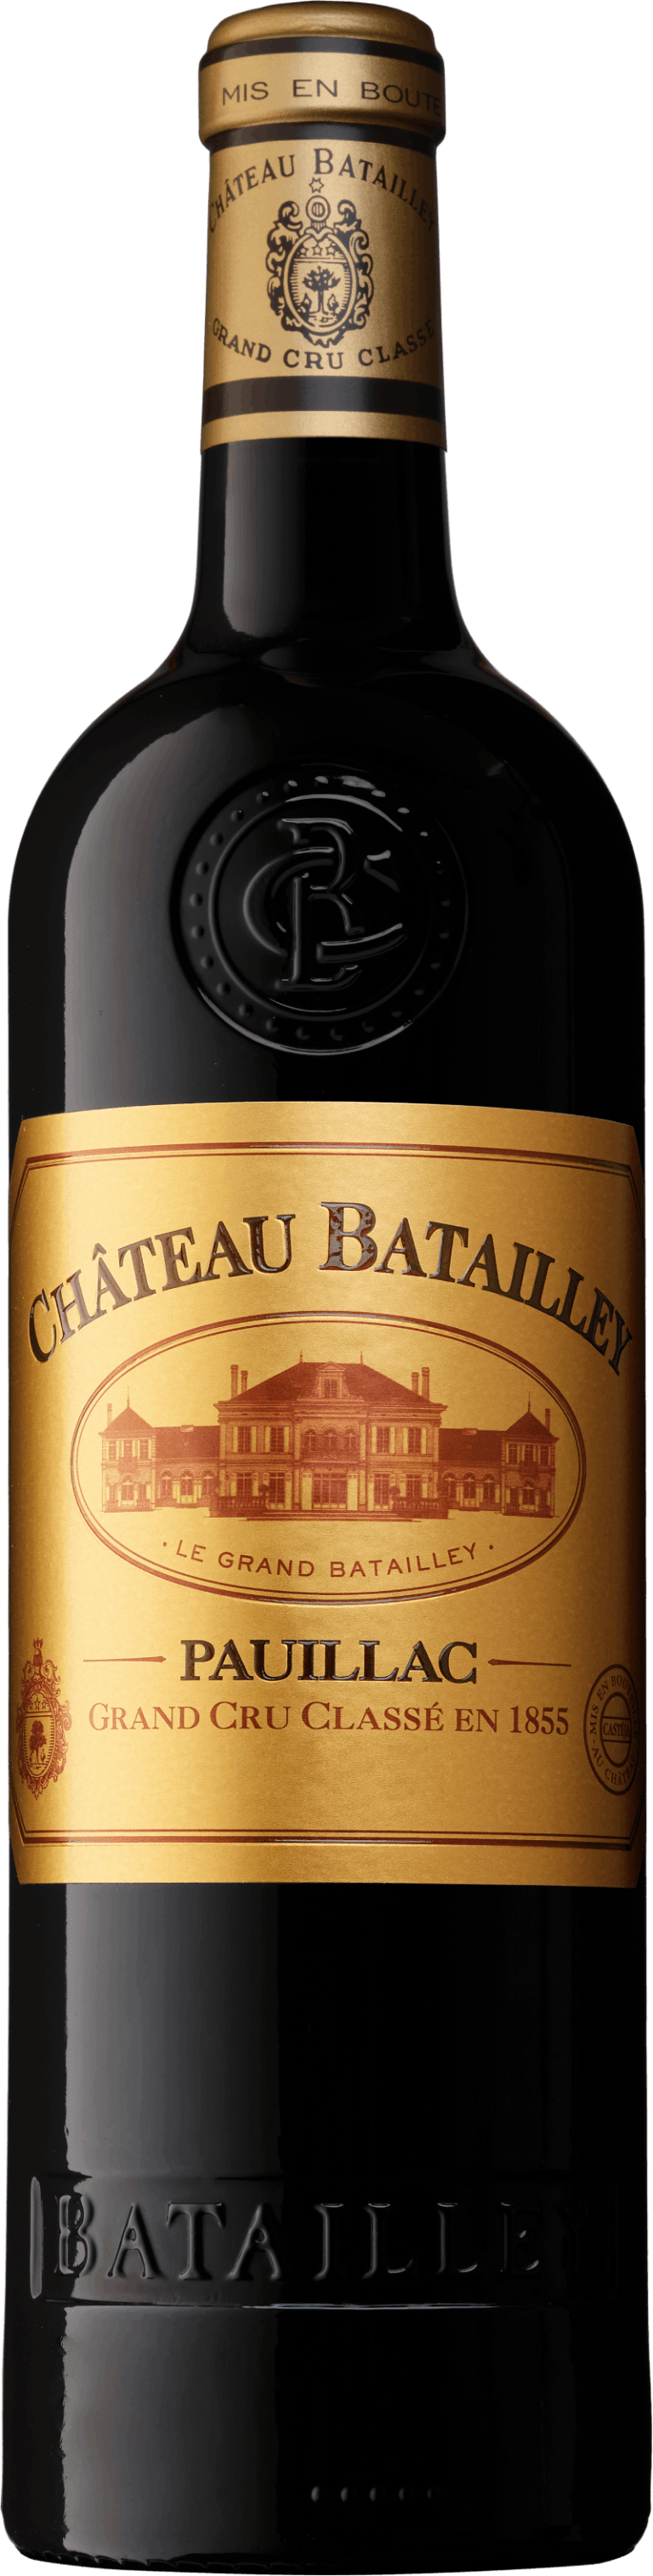 Chateau Batailley Pauillac Grand Cru Classe 2015 750ML A